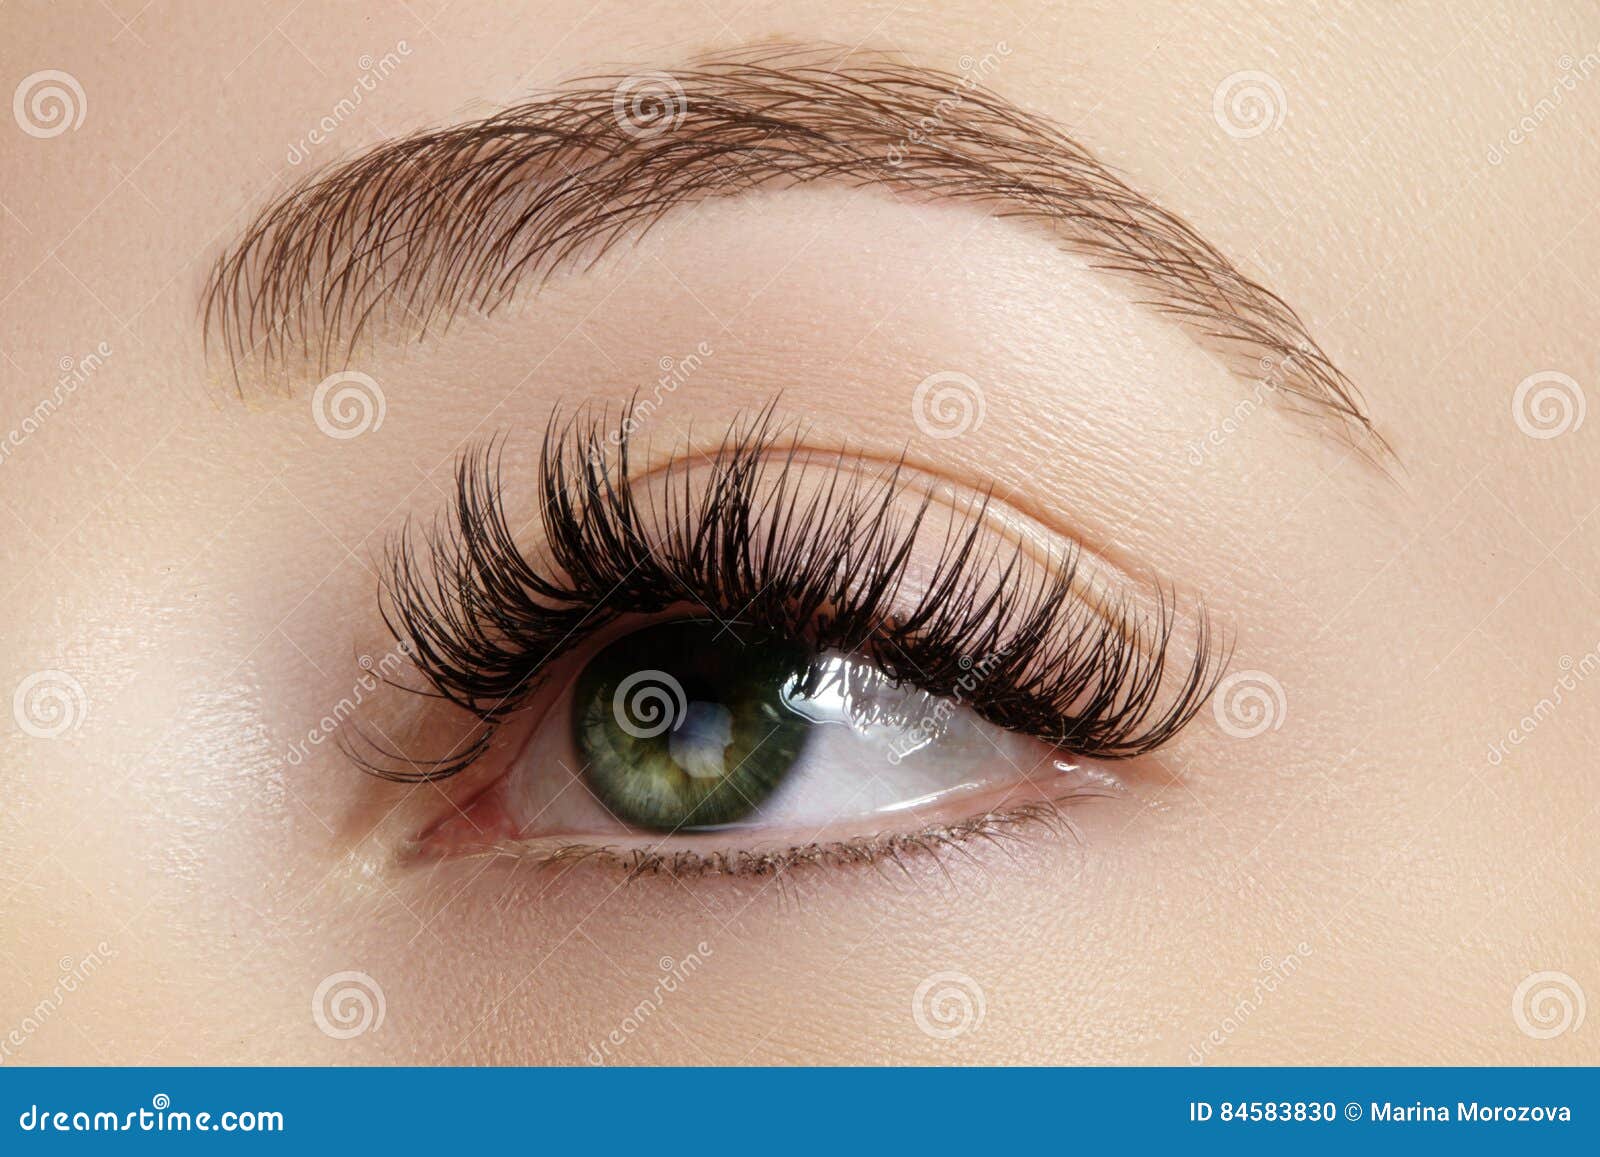 perfect  of eyebrows, brown eyeshadows and long eyelashes. closeup macro shot of fashion smoky eyes visage